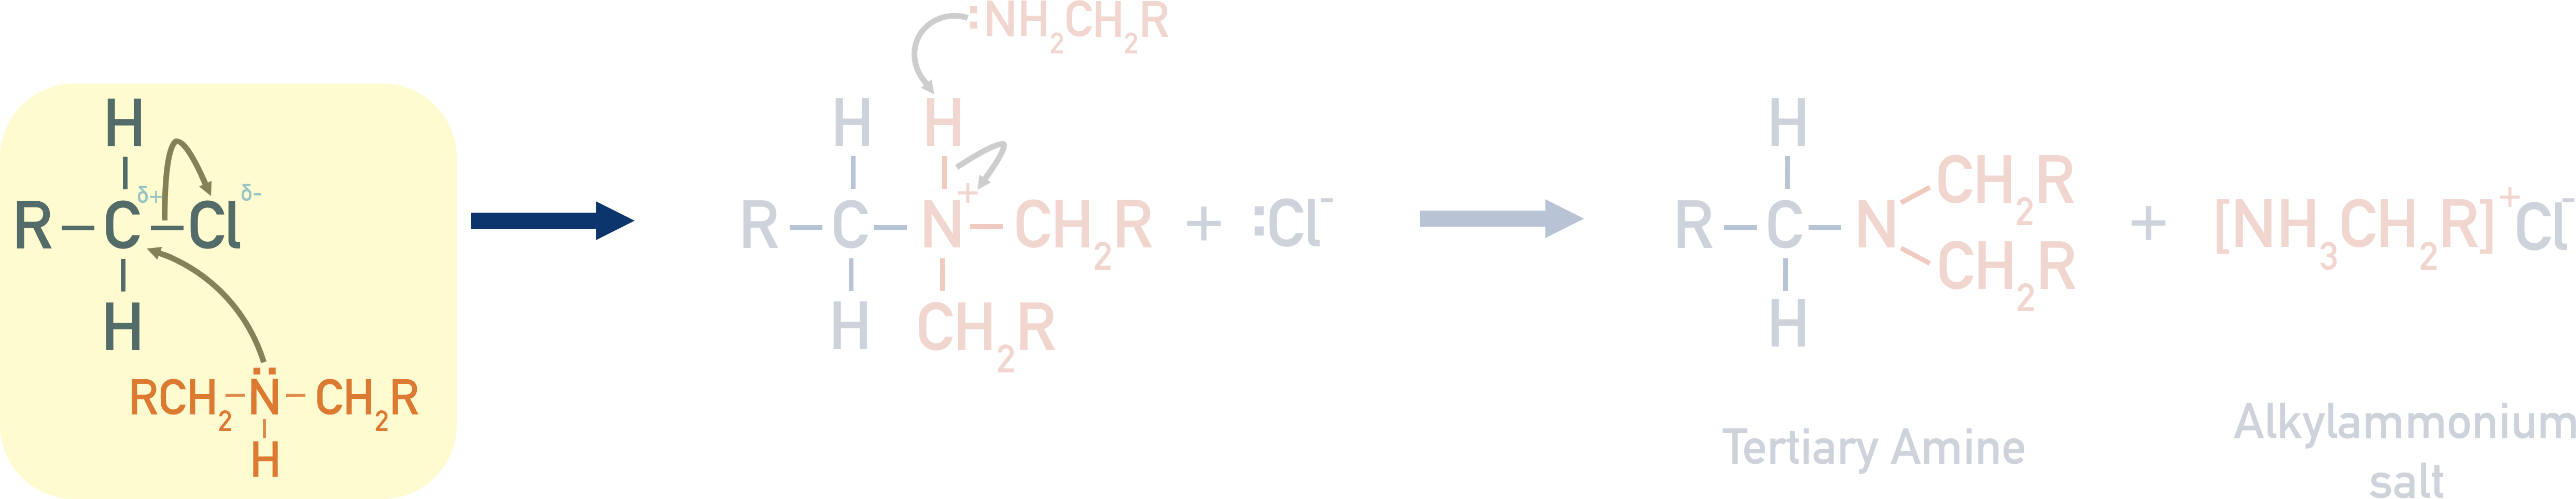 tertiary amine mechanism from halogenoalkane and secondary amine step 1